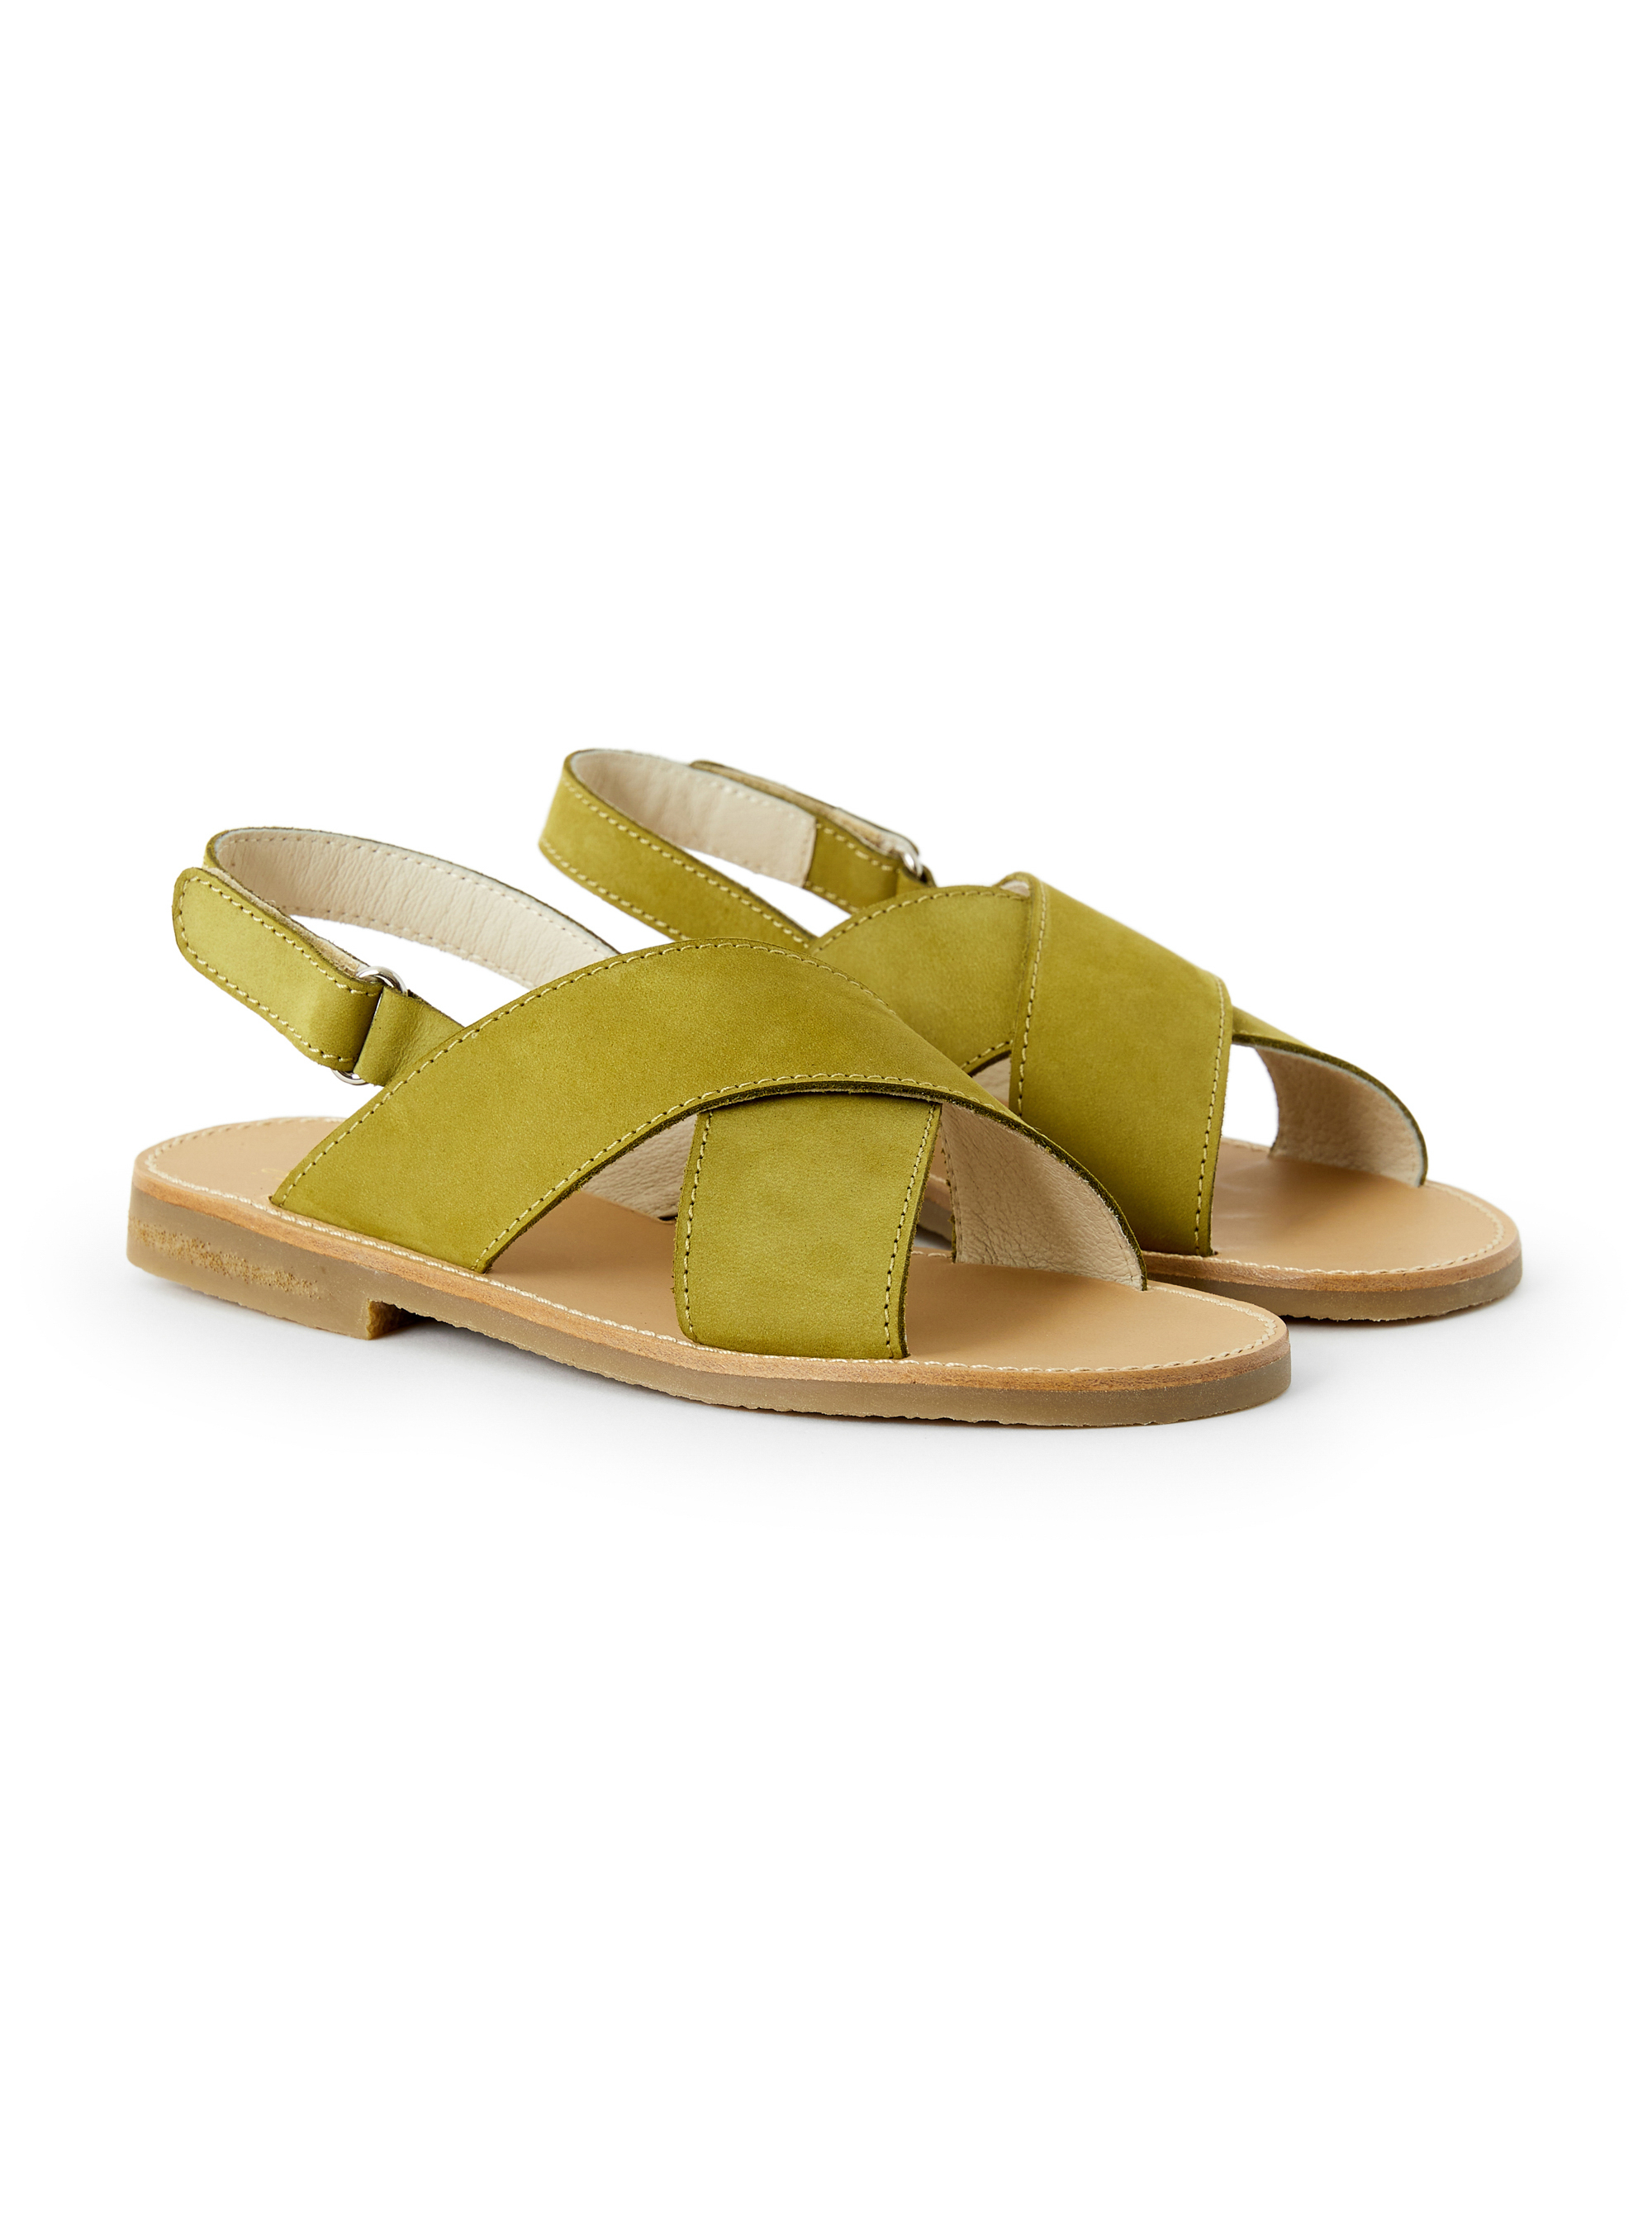 Sandale verte avec bandes croisées - Chaussures - Il Gufo